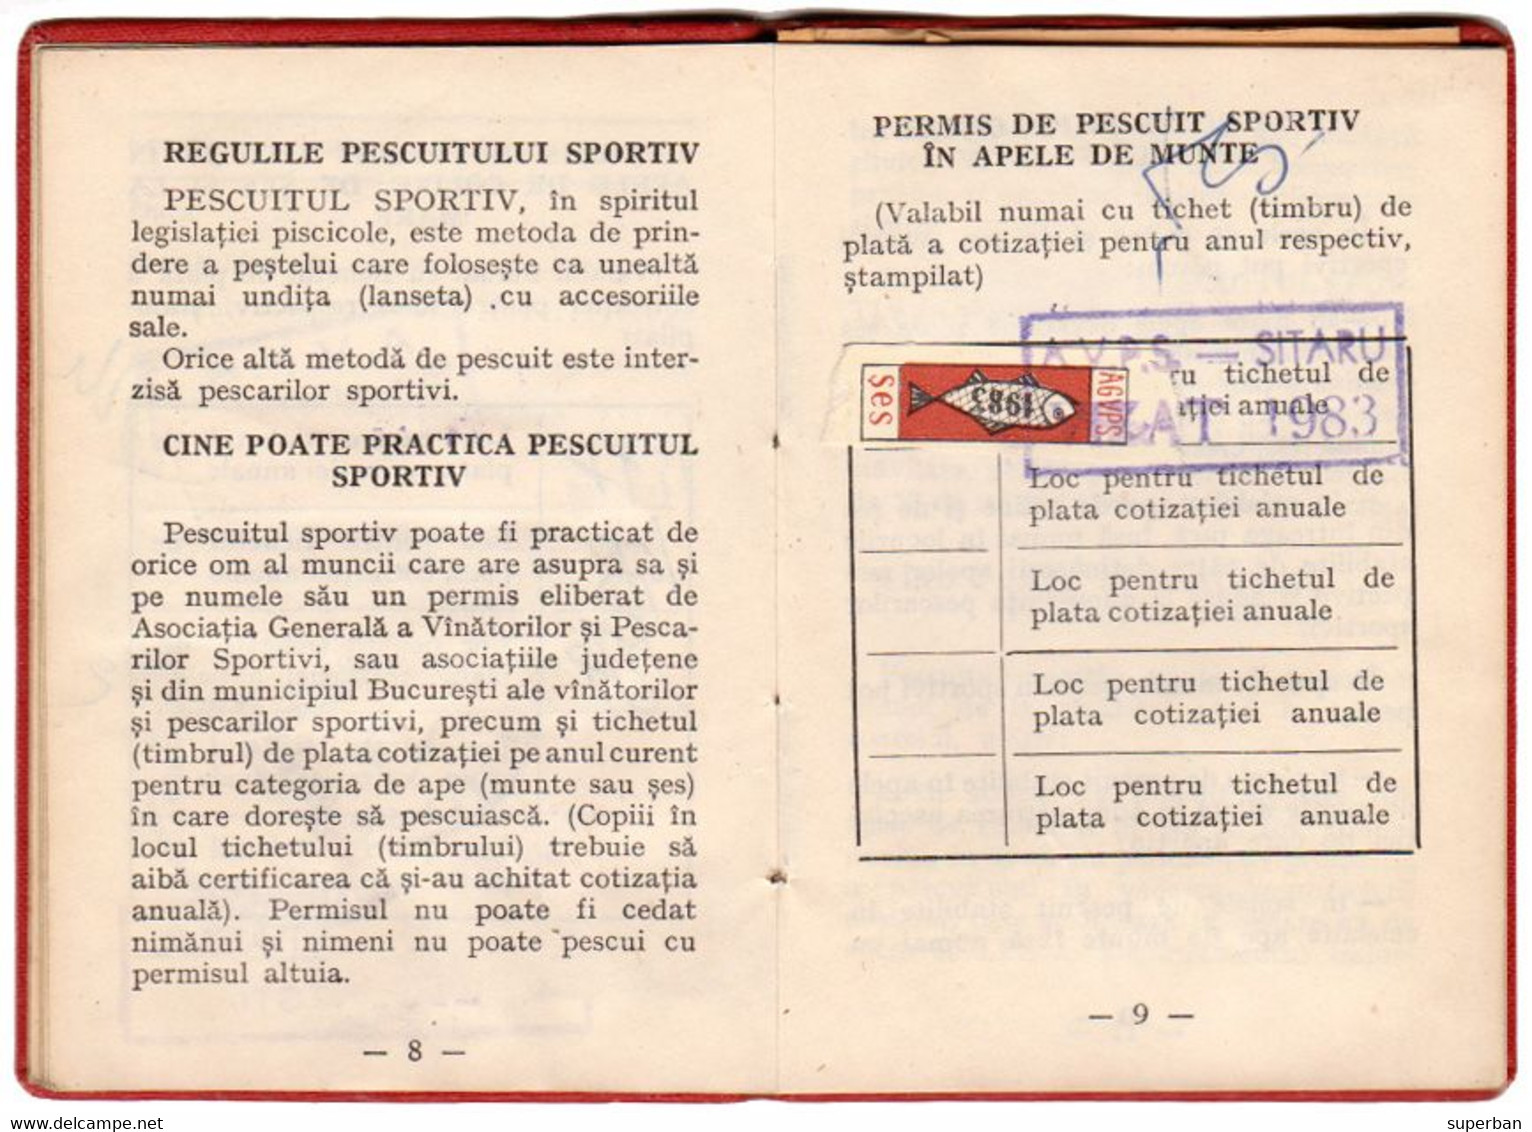 TIMBRES FISCAUX : TIMBRES Sur PERMIS DE PÊCHE / FISHING CINDERELLA - ROUMANIE / ROMANIA : 1977 - 1983 - RRR !!! (ak600) - Revenue Stamps